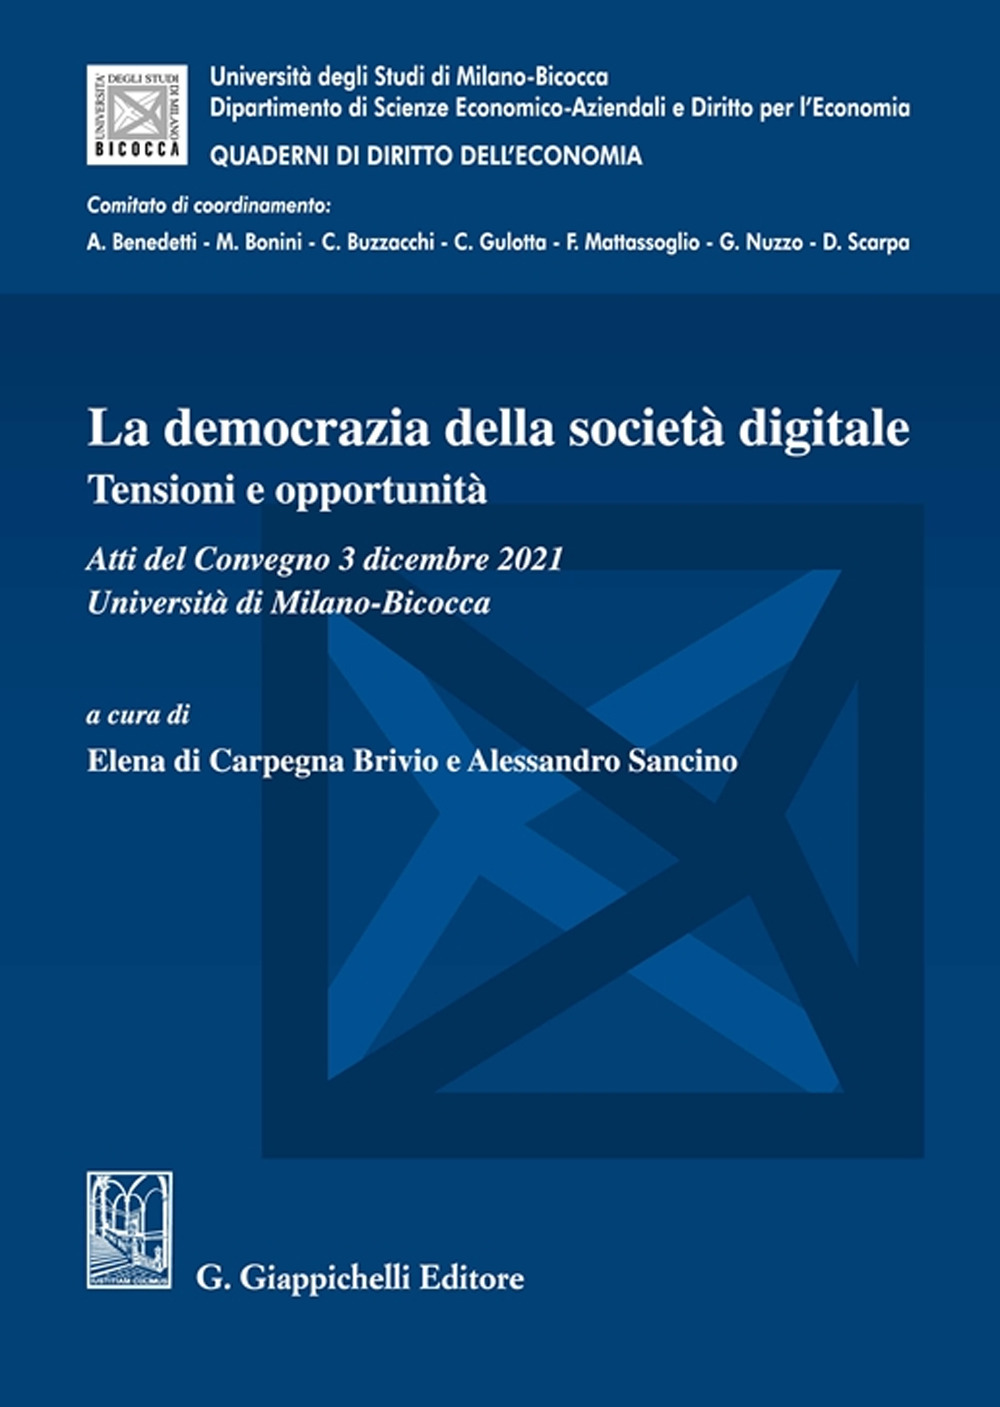 La democrazia della società digitale. Tensioni e opportunità. Atti del Convegno (3 dicembre 2021, Università di Milano-Bicocca)